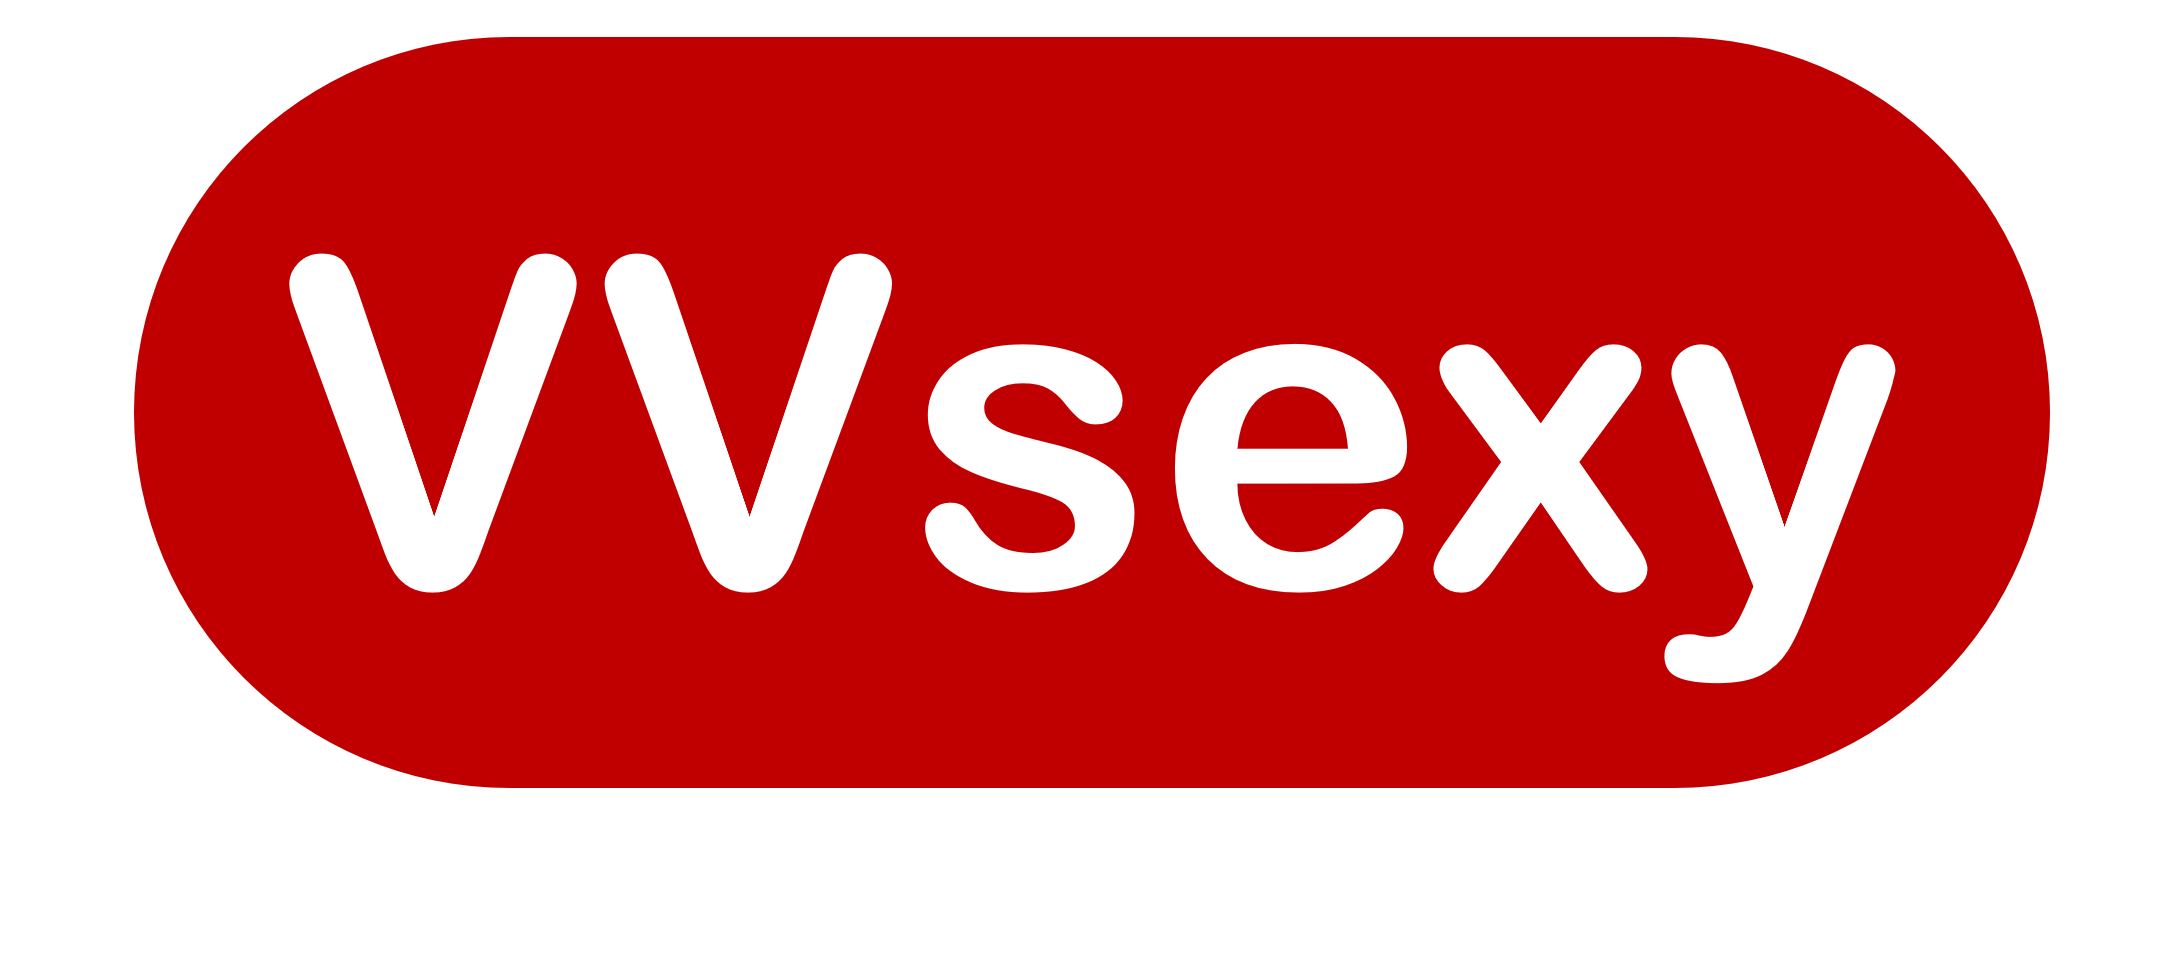 VVsexy